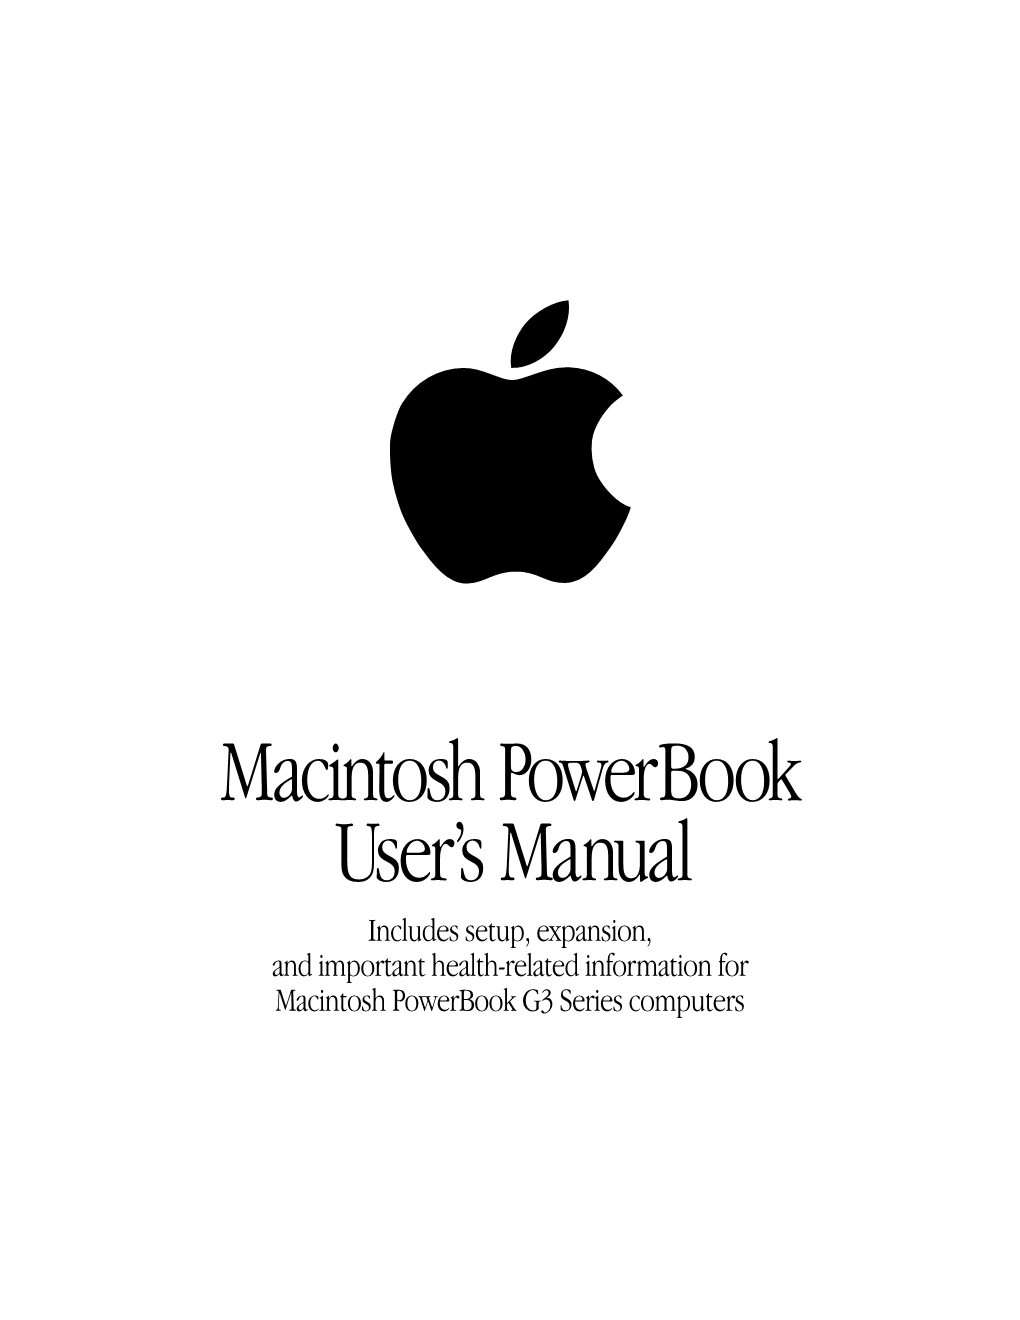 Macintosh Powerbook User's Manual